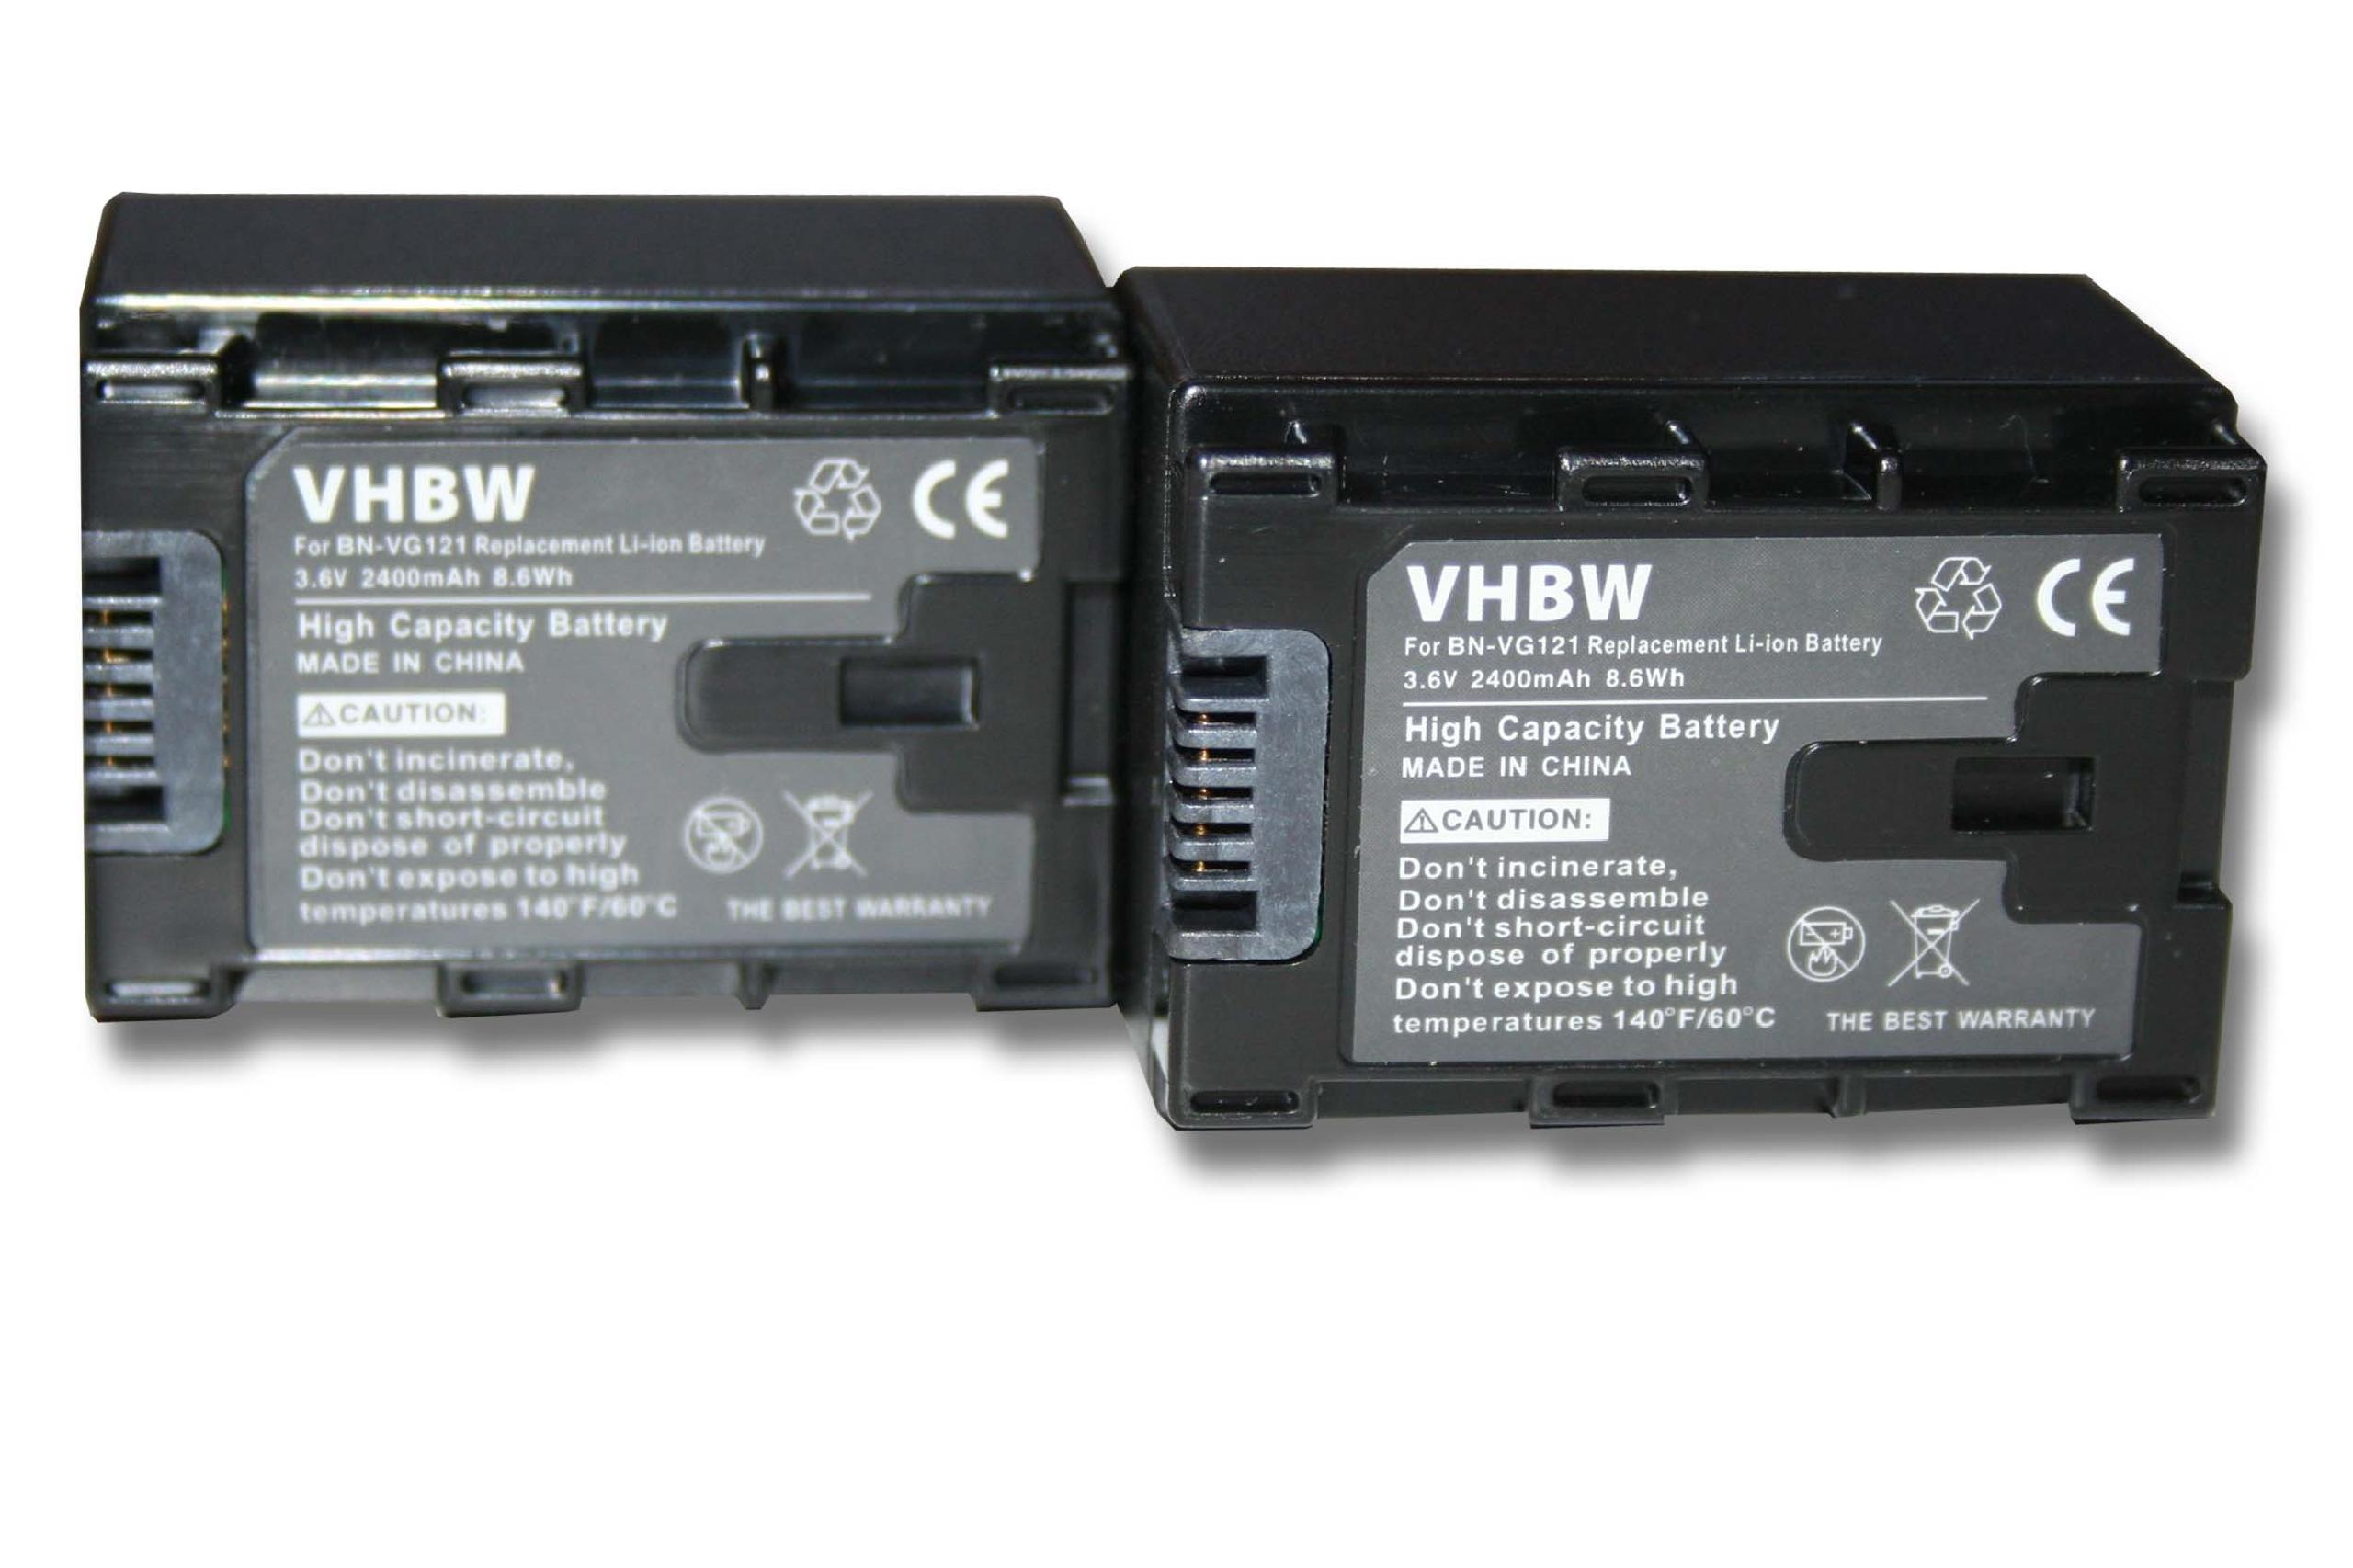 VHBW 3.6 2400 kompatibel - GZ-EX310BU, Videokamera, Li-Ion JVC GZ-EX355, GZ-EX310WU, Akku mit Volt, GZ-EX515, GZ-EX310AU